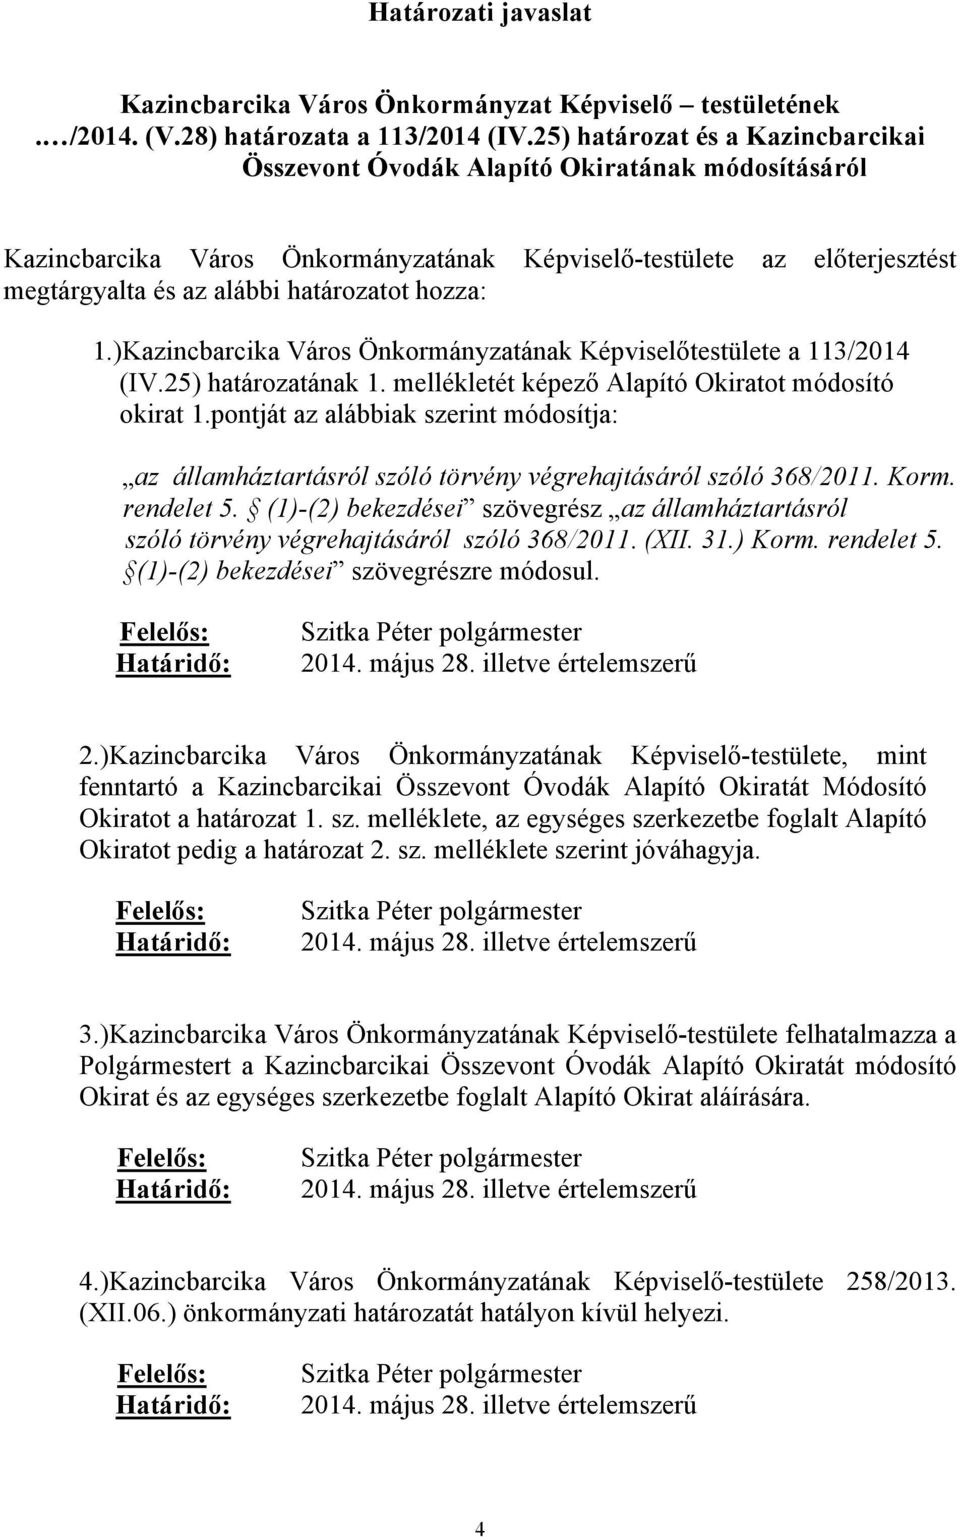 hozza: 1.)Kazincbarcika Város Önkormányzatának Képviselőtestülete a 113/2014 (IV.25) határozatának 1. mellékletét képező Alapító Okiratot módosító okirat 1.